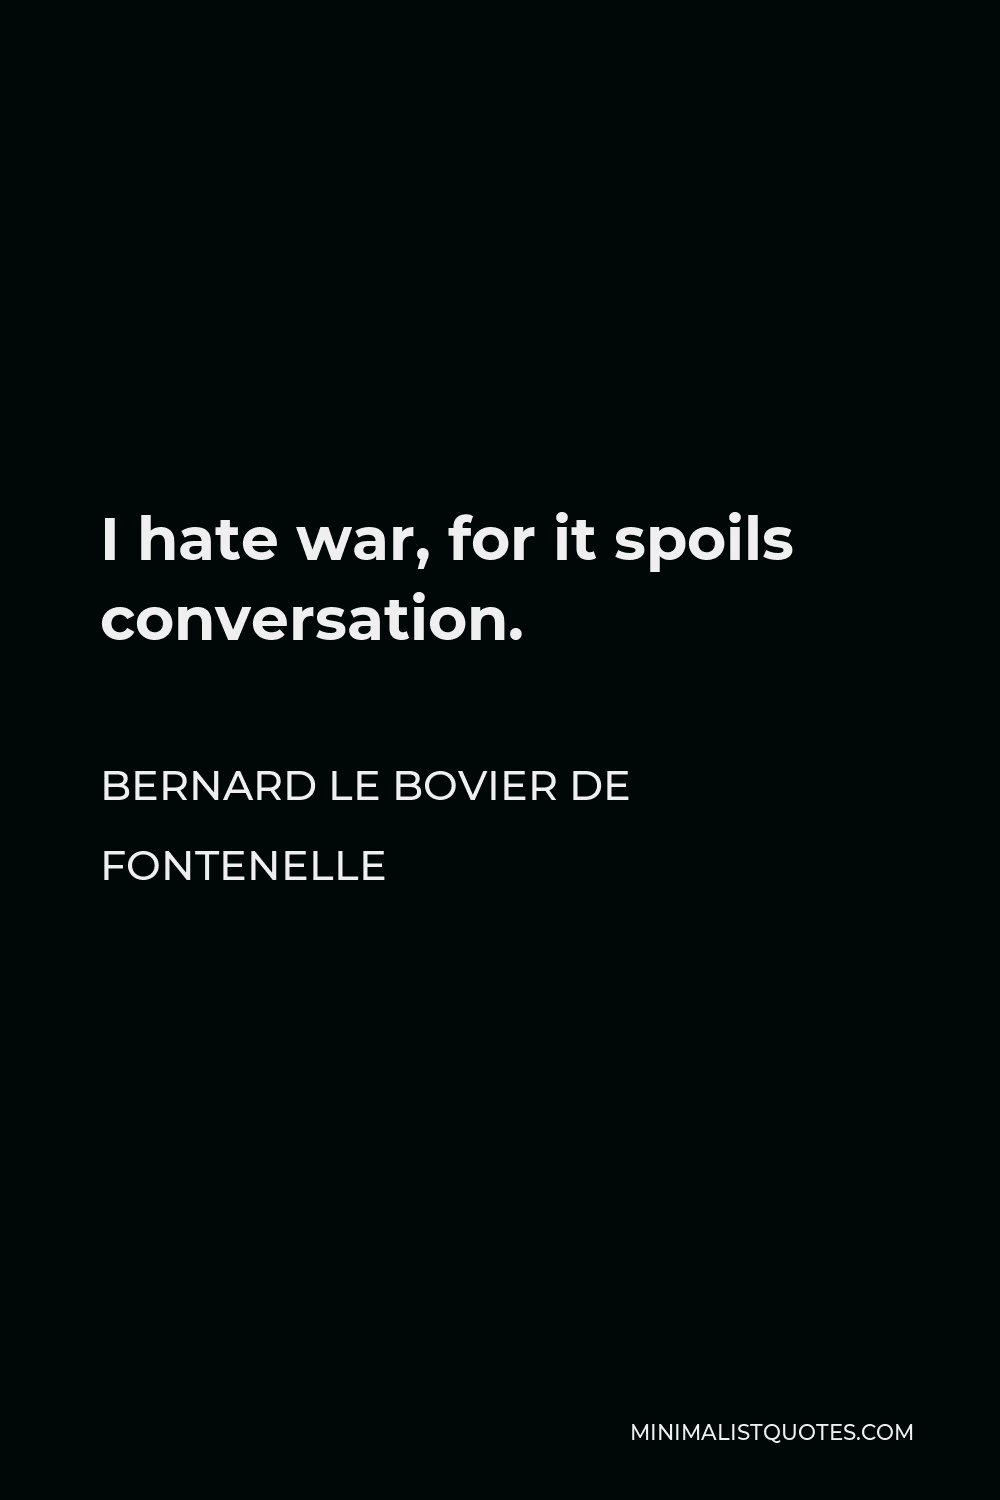 Bernard le Bovier de Fontenelle Quote - I hate war, for it spoils conversation.